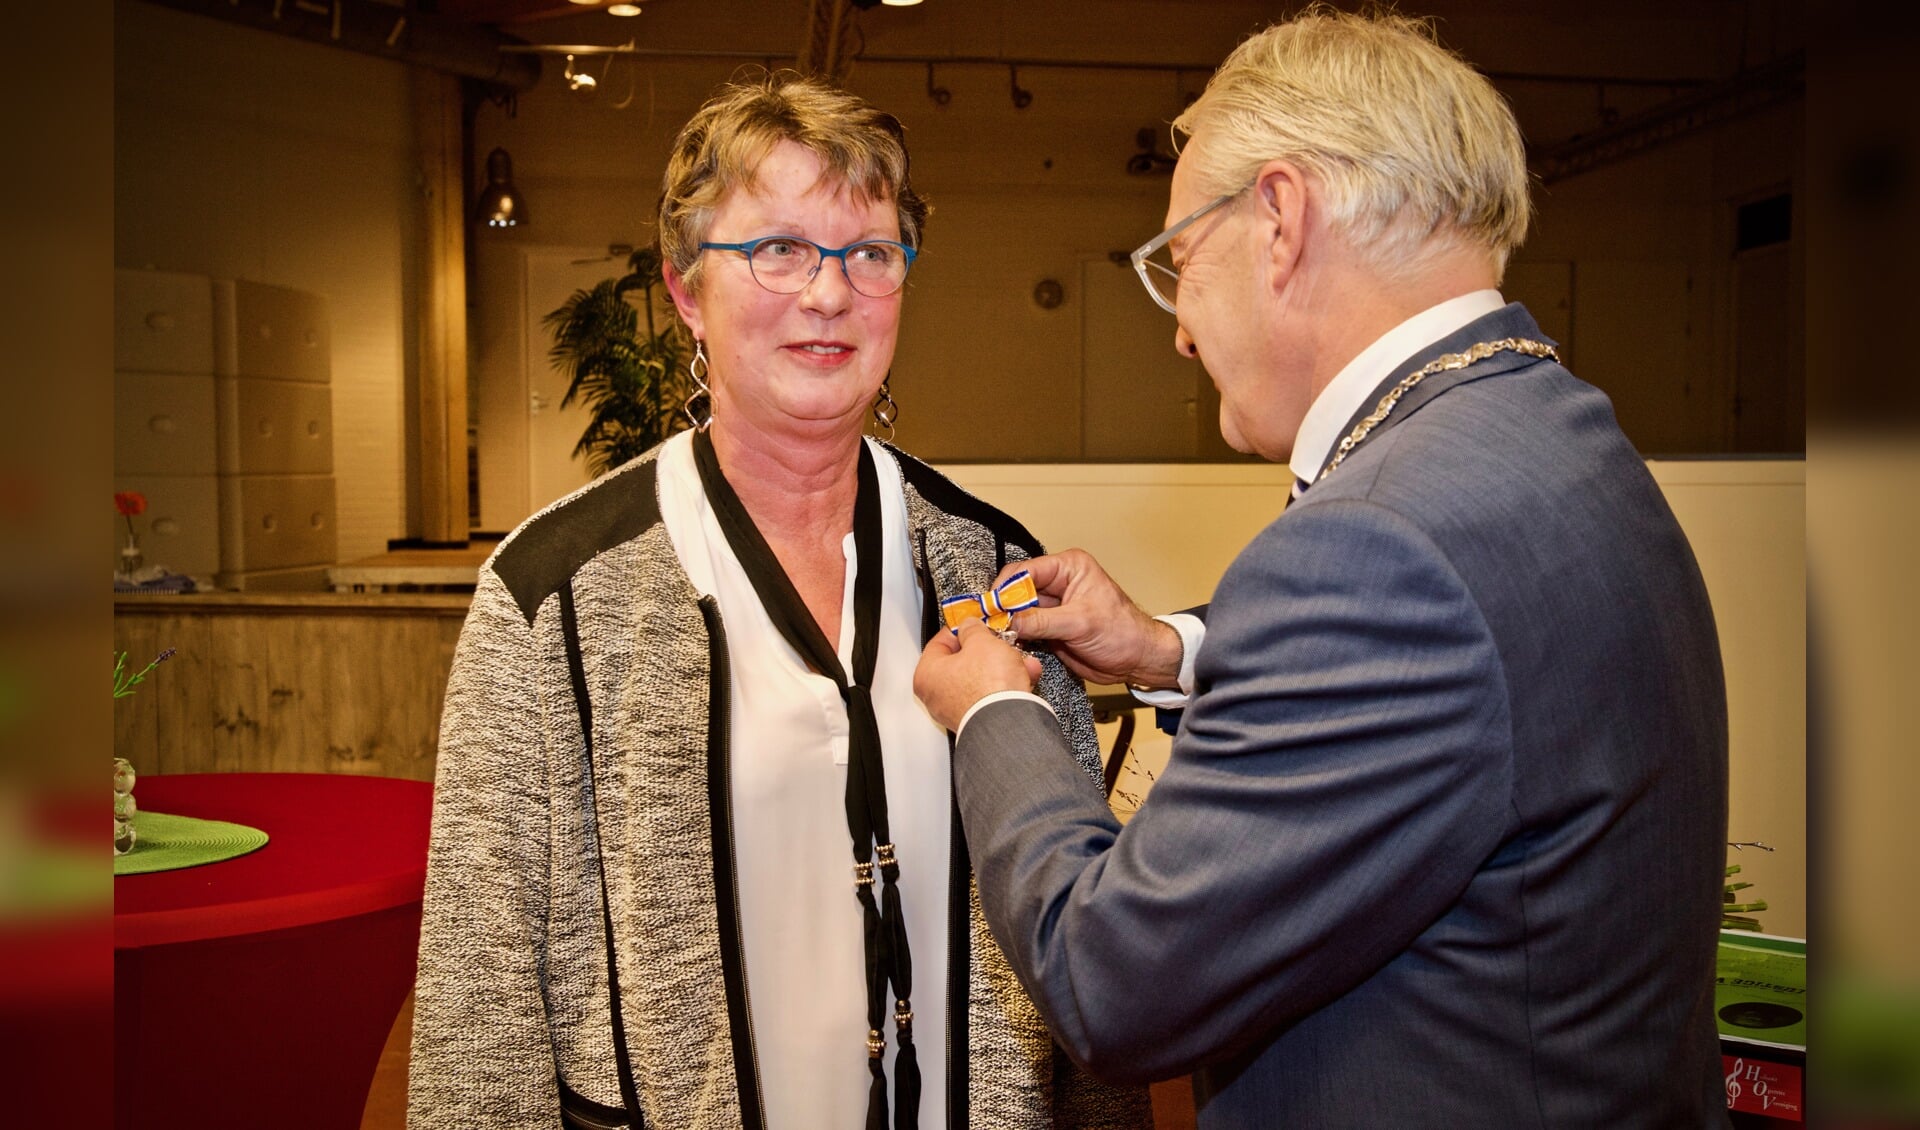 De burgemeester spelt de onderscheiding bij Marry van Dijk op.
Foto: Stip Fotografie